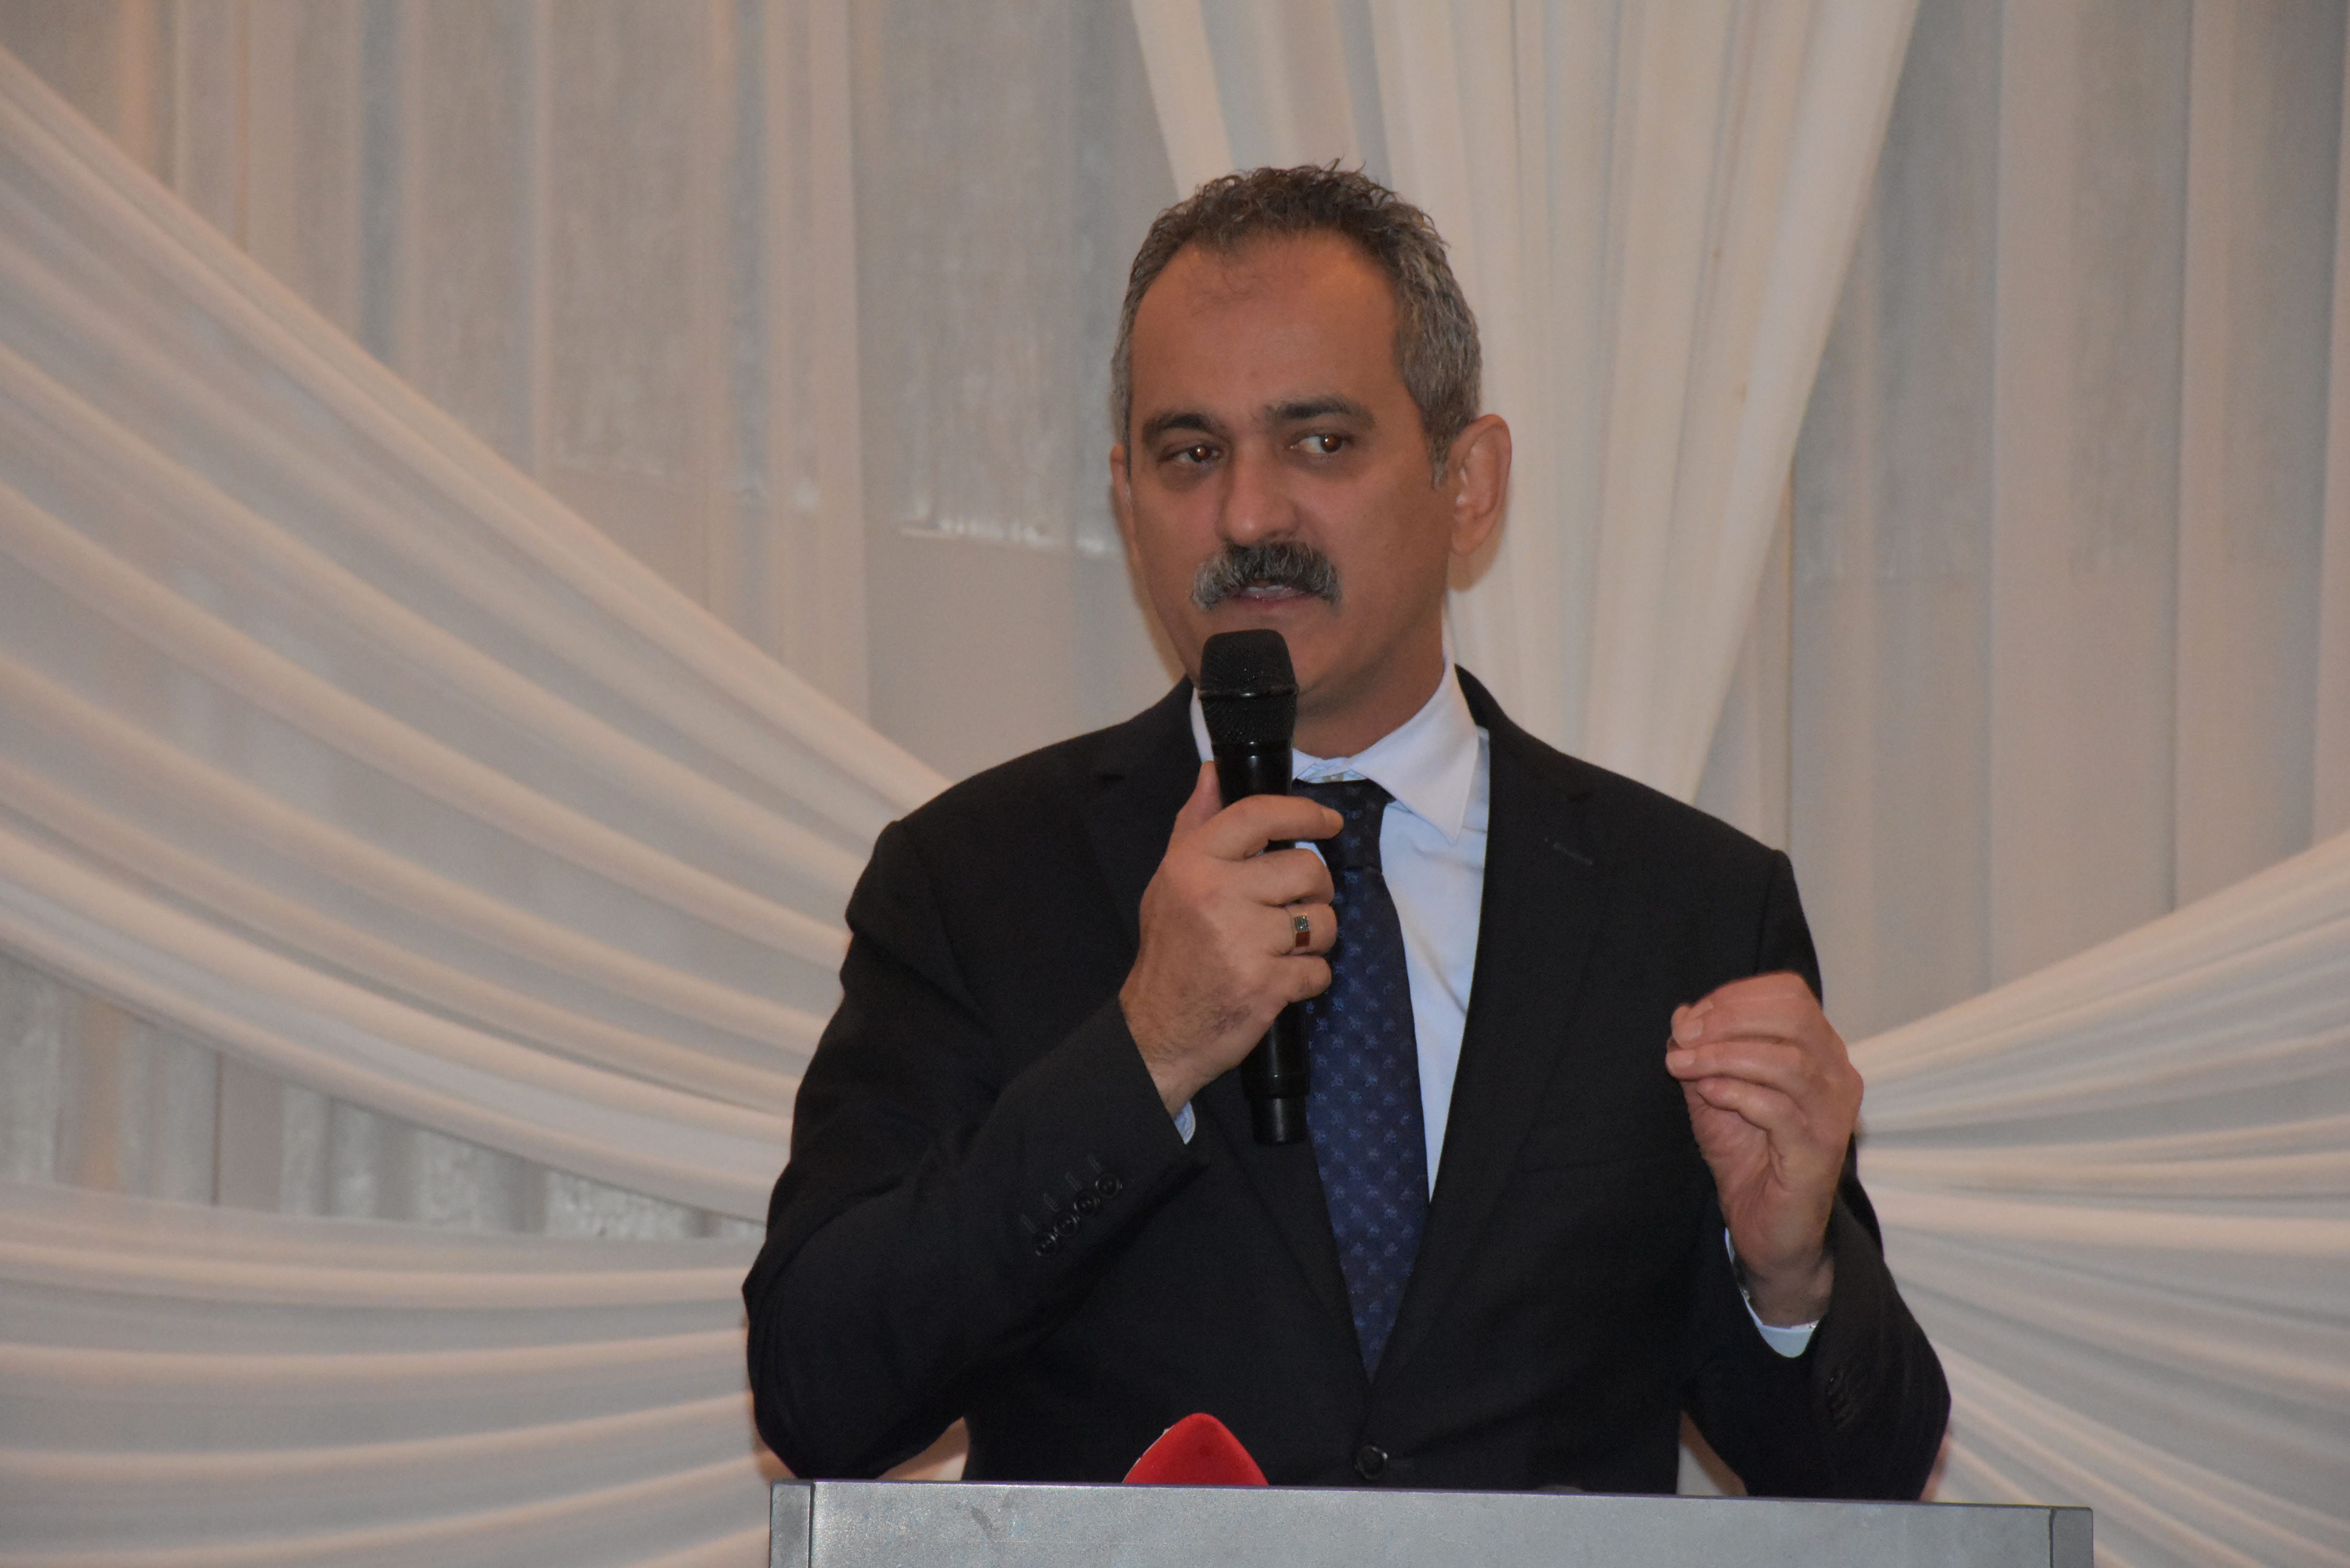 Milli Eğitim Bakanı Özer, Aybastı ilçesinde iftar programında konuştu: